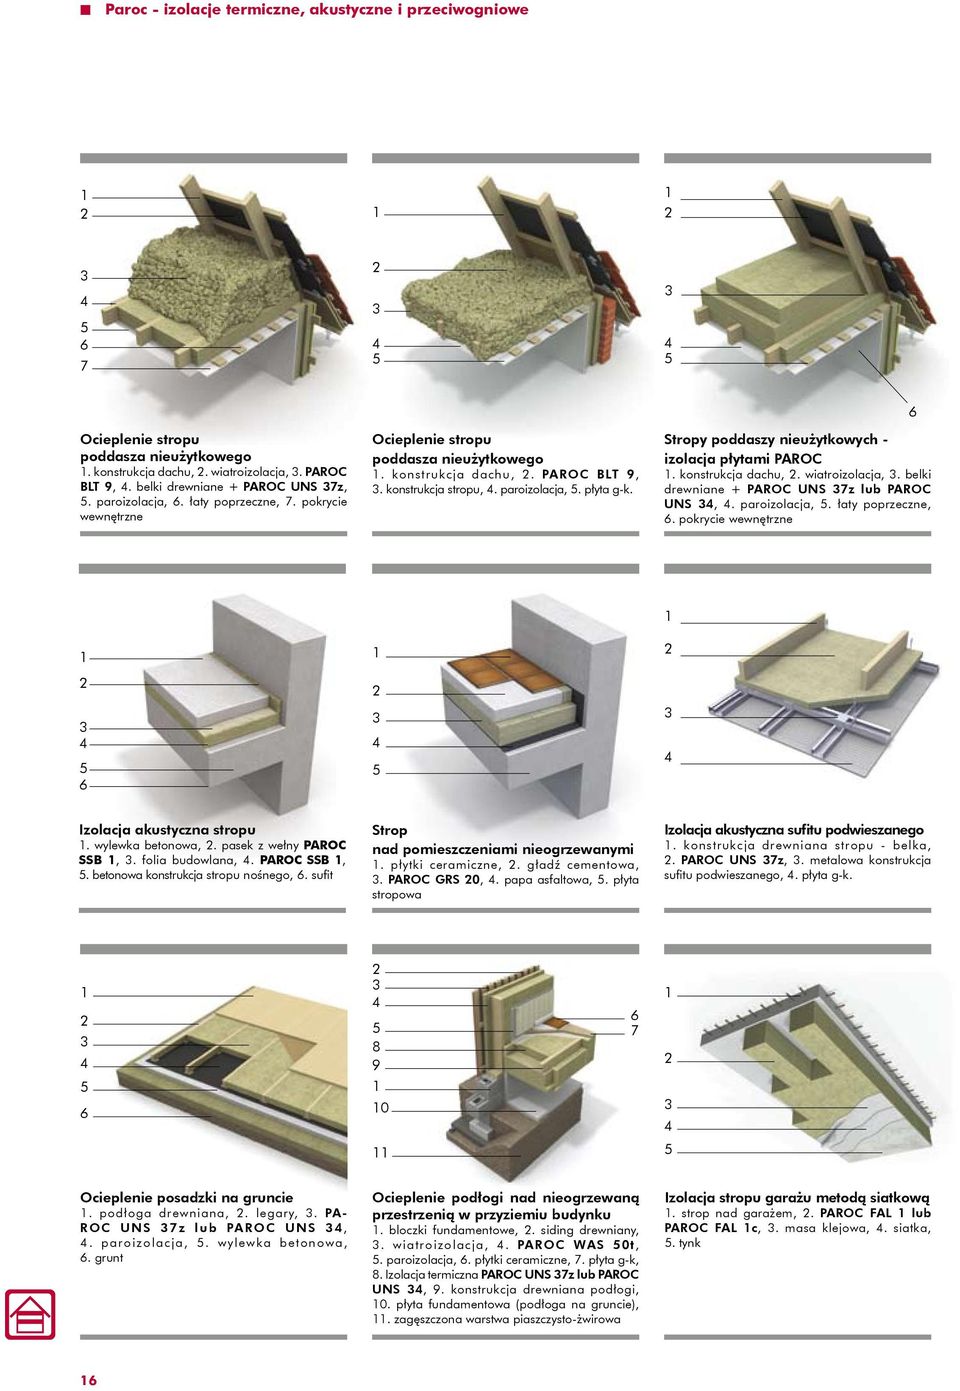 Stropy poddaszy nieużytkowych - izolacja płytami PAROC. konstrukcja dachu,. wiatroizolacja,. belki drewniane + PAROC UNS 7z lub PAROC UNS,. paroizolacja,. łaty poprzeczne,.